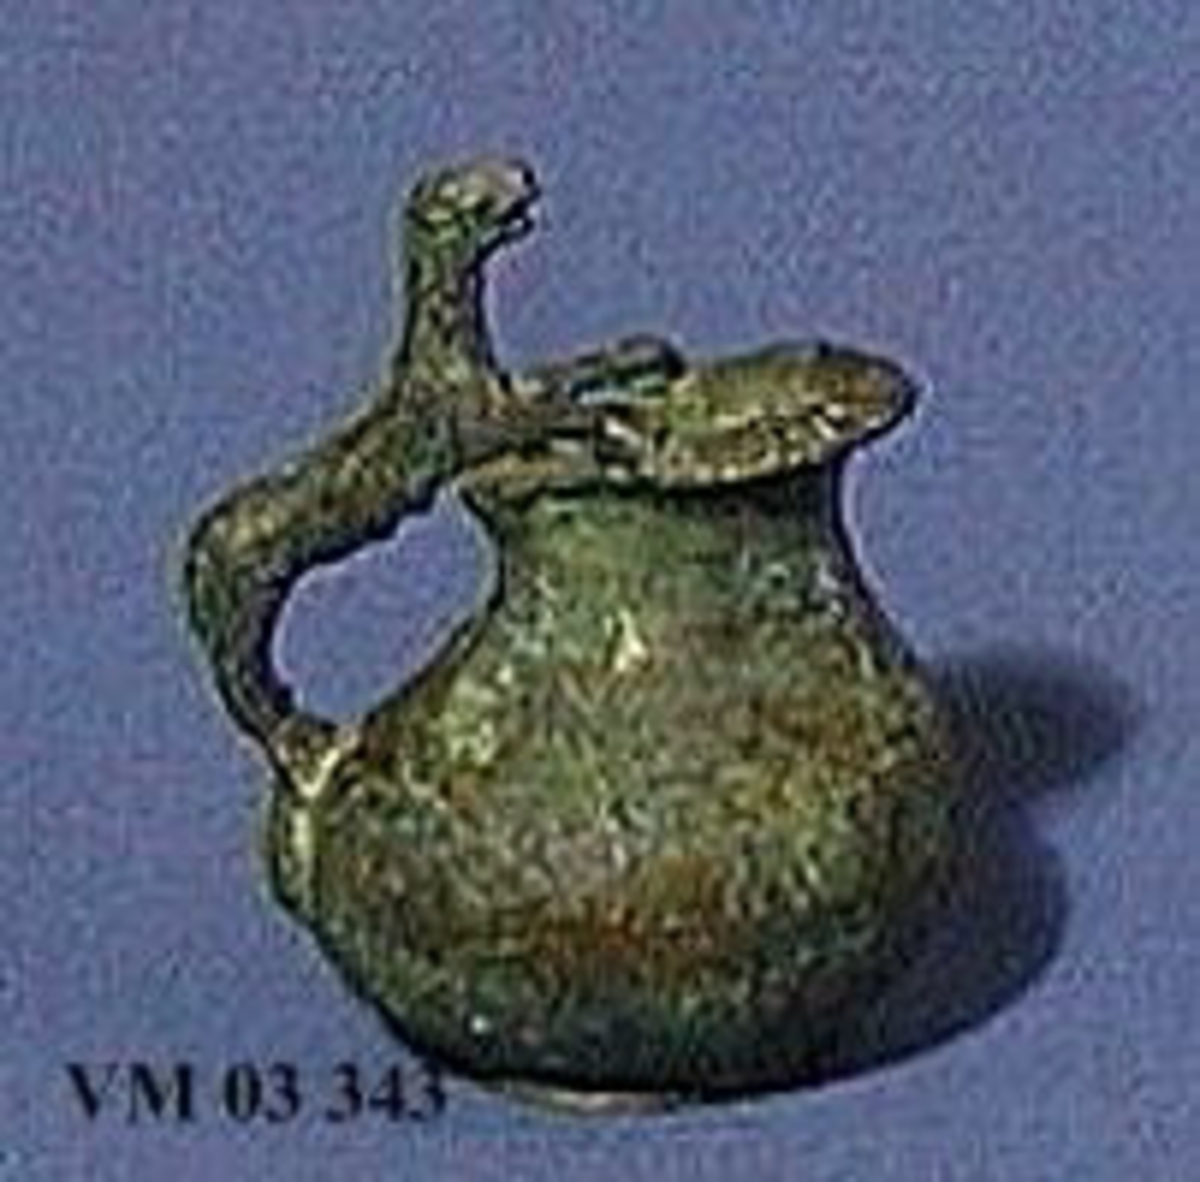 En liten bronsurna med grepei form av en panter, från Gamla Lödöse.

Urnan avtecknad i den gamla katalogen.